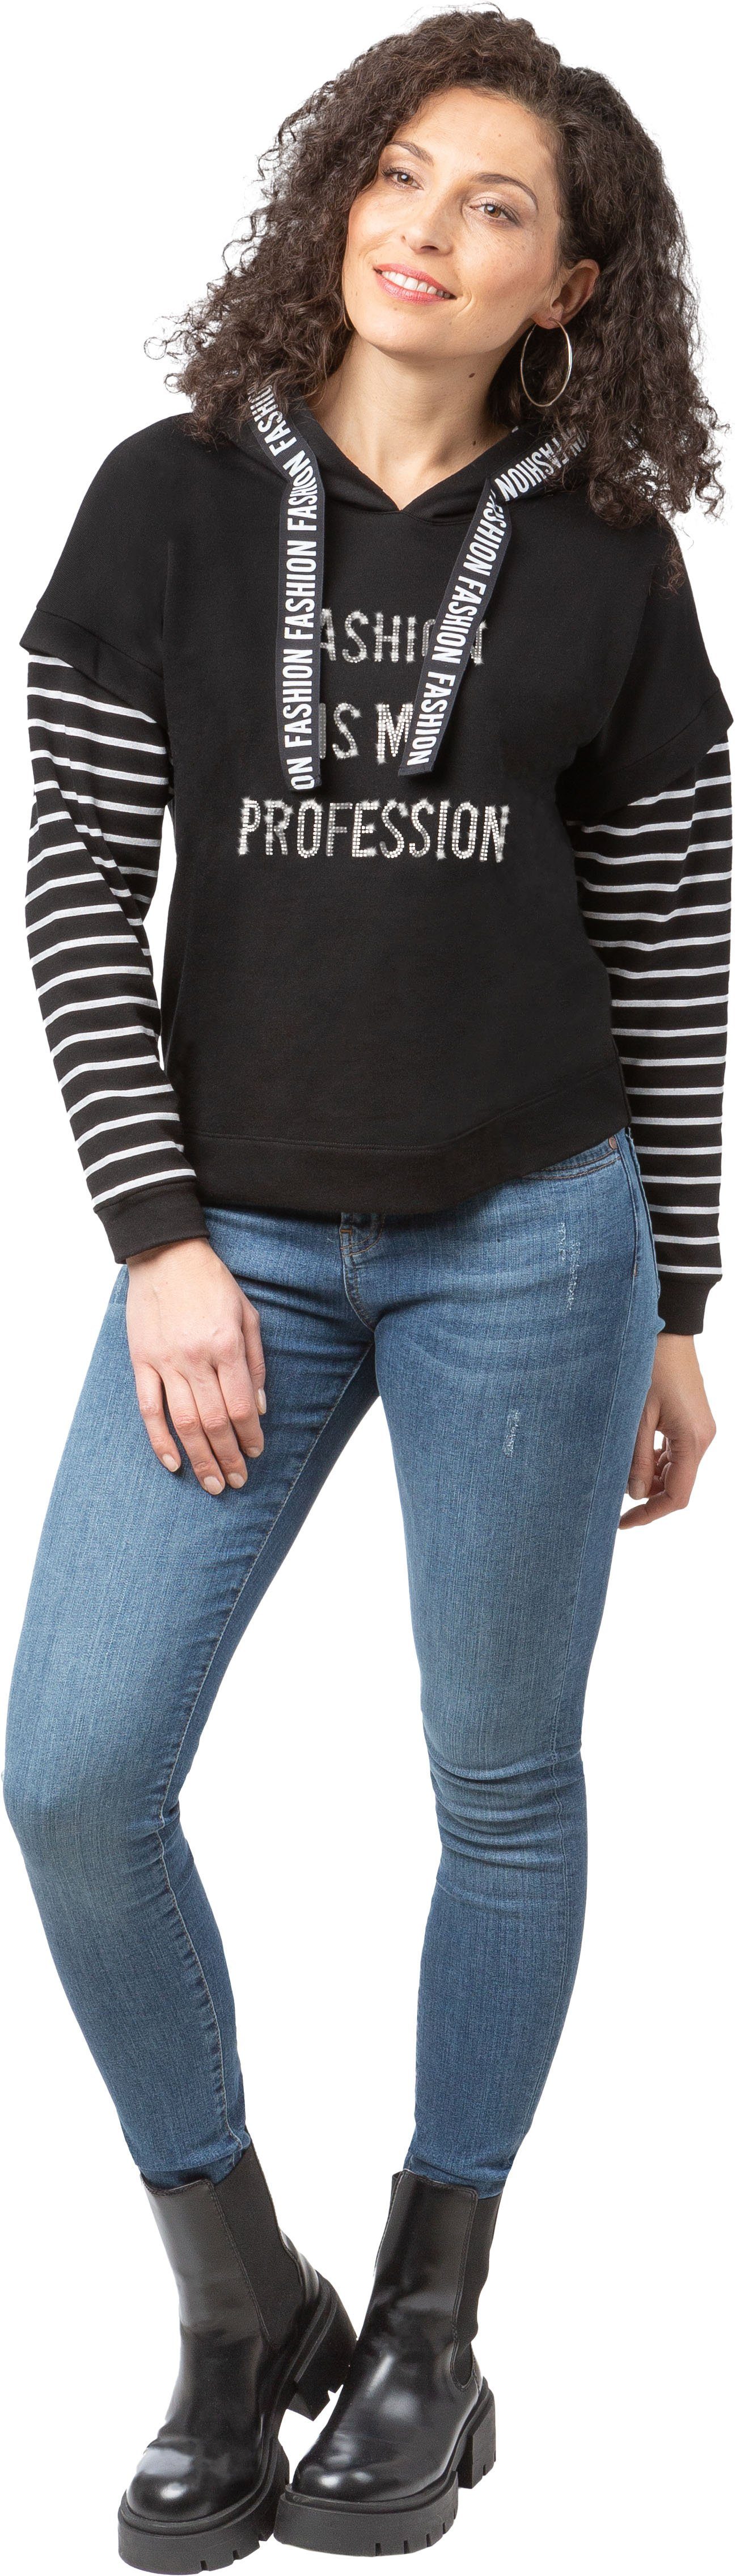 Estefania for woman Sweatshirt 186-7125 mit Kapuze und Fashion-Details schwarz-weiß